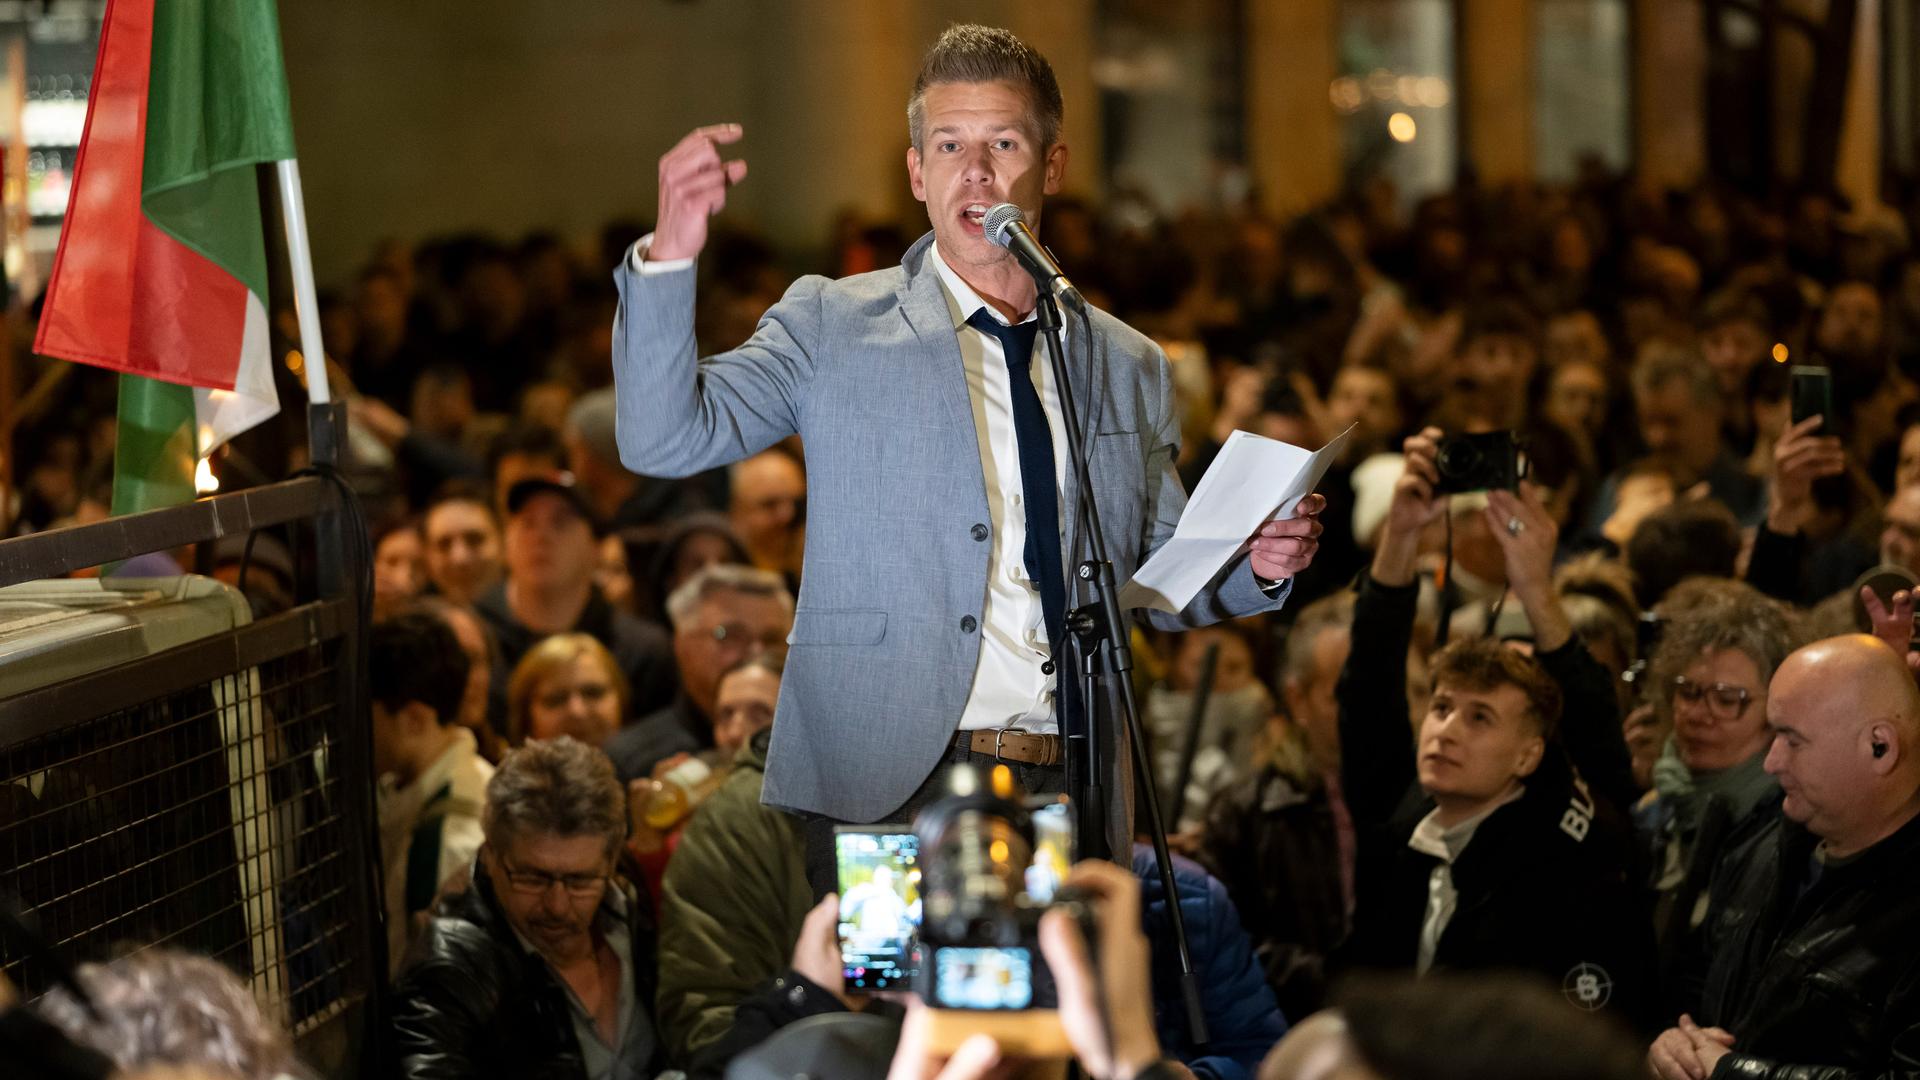 Der ungarische Oppositionspolitiker Peter Magyar hält während der Anti-Orban-Proteste in Budapest eine Rede.